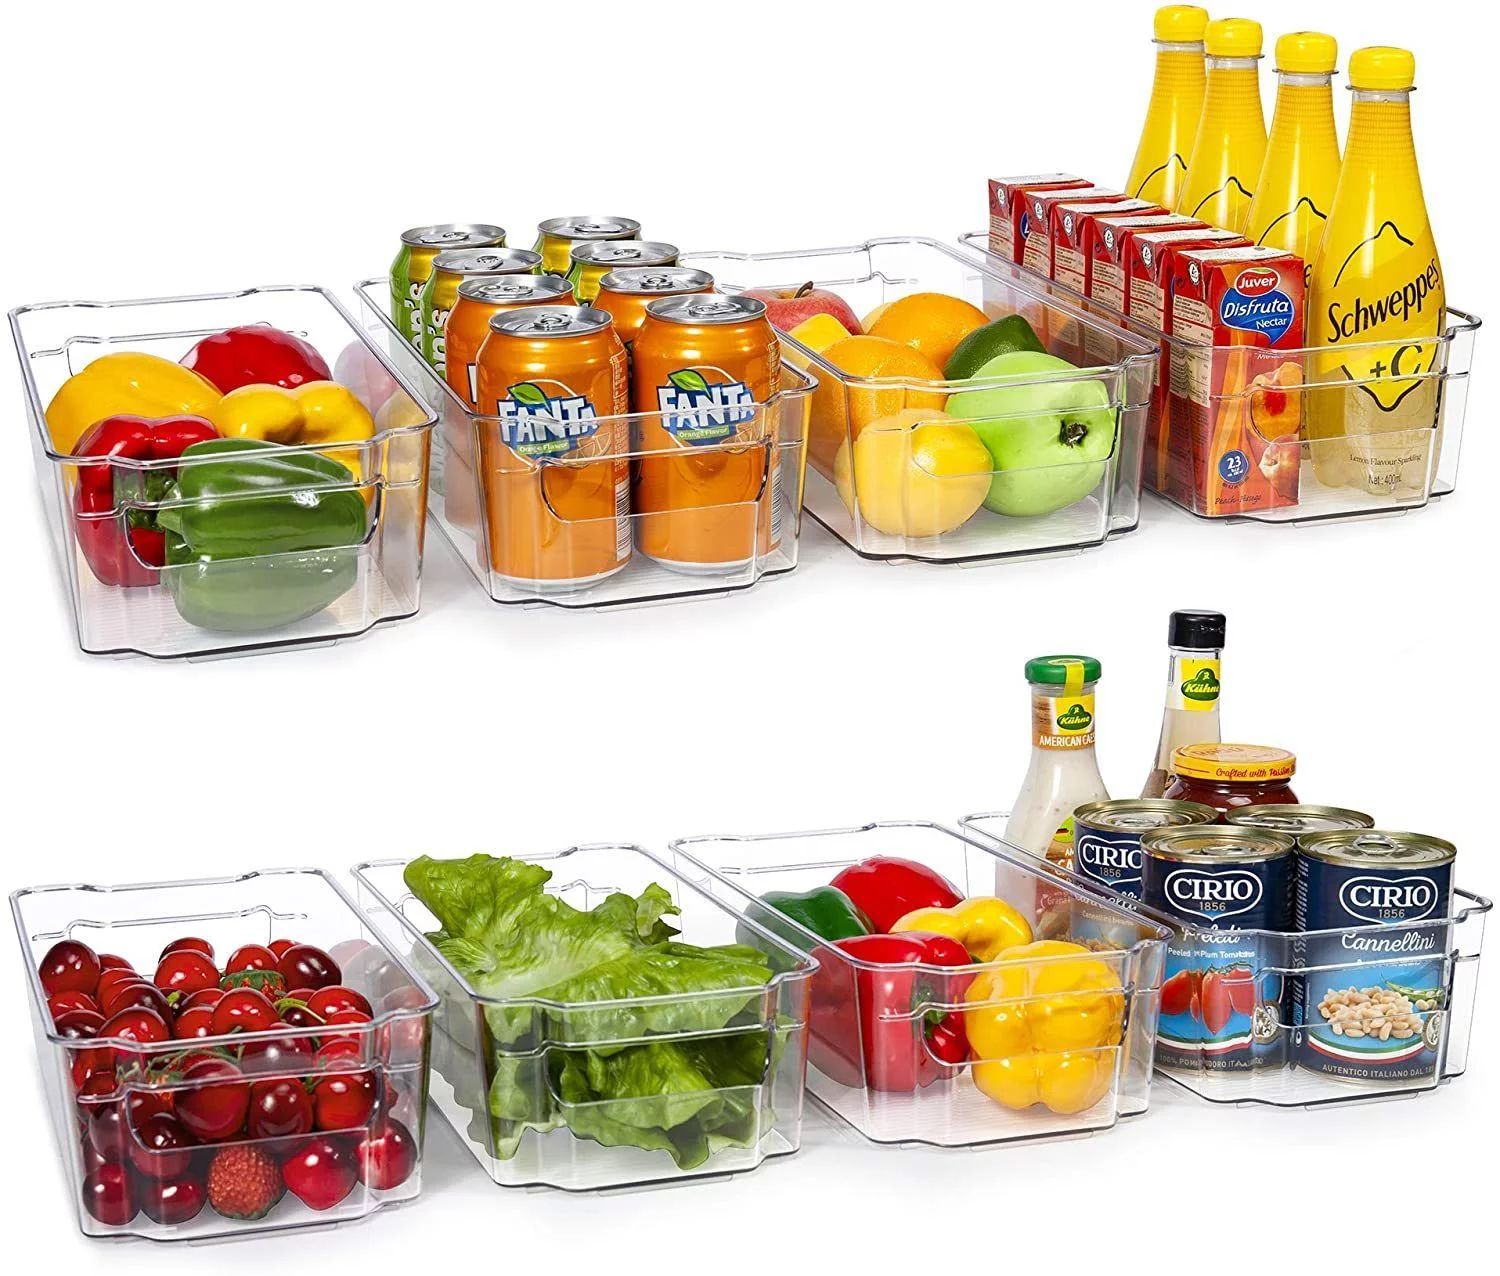 HOOJO Refrigerator Organizer Bins - 8pcs Clear Plastic Bins For Fridge, Freezer, Kitchen Cabinet,... | Walmart (US)